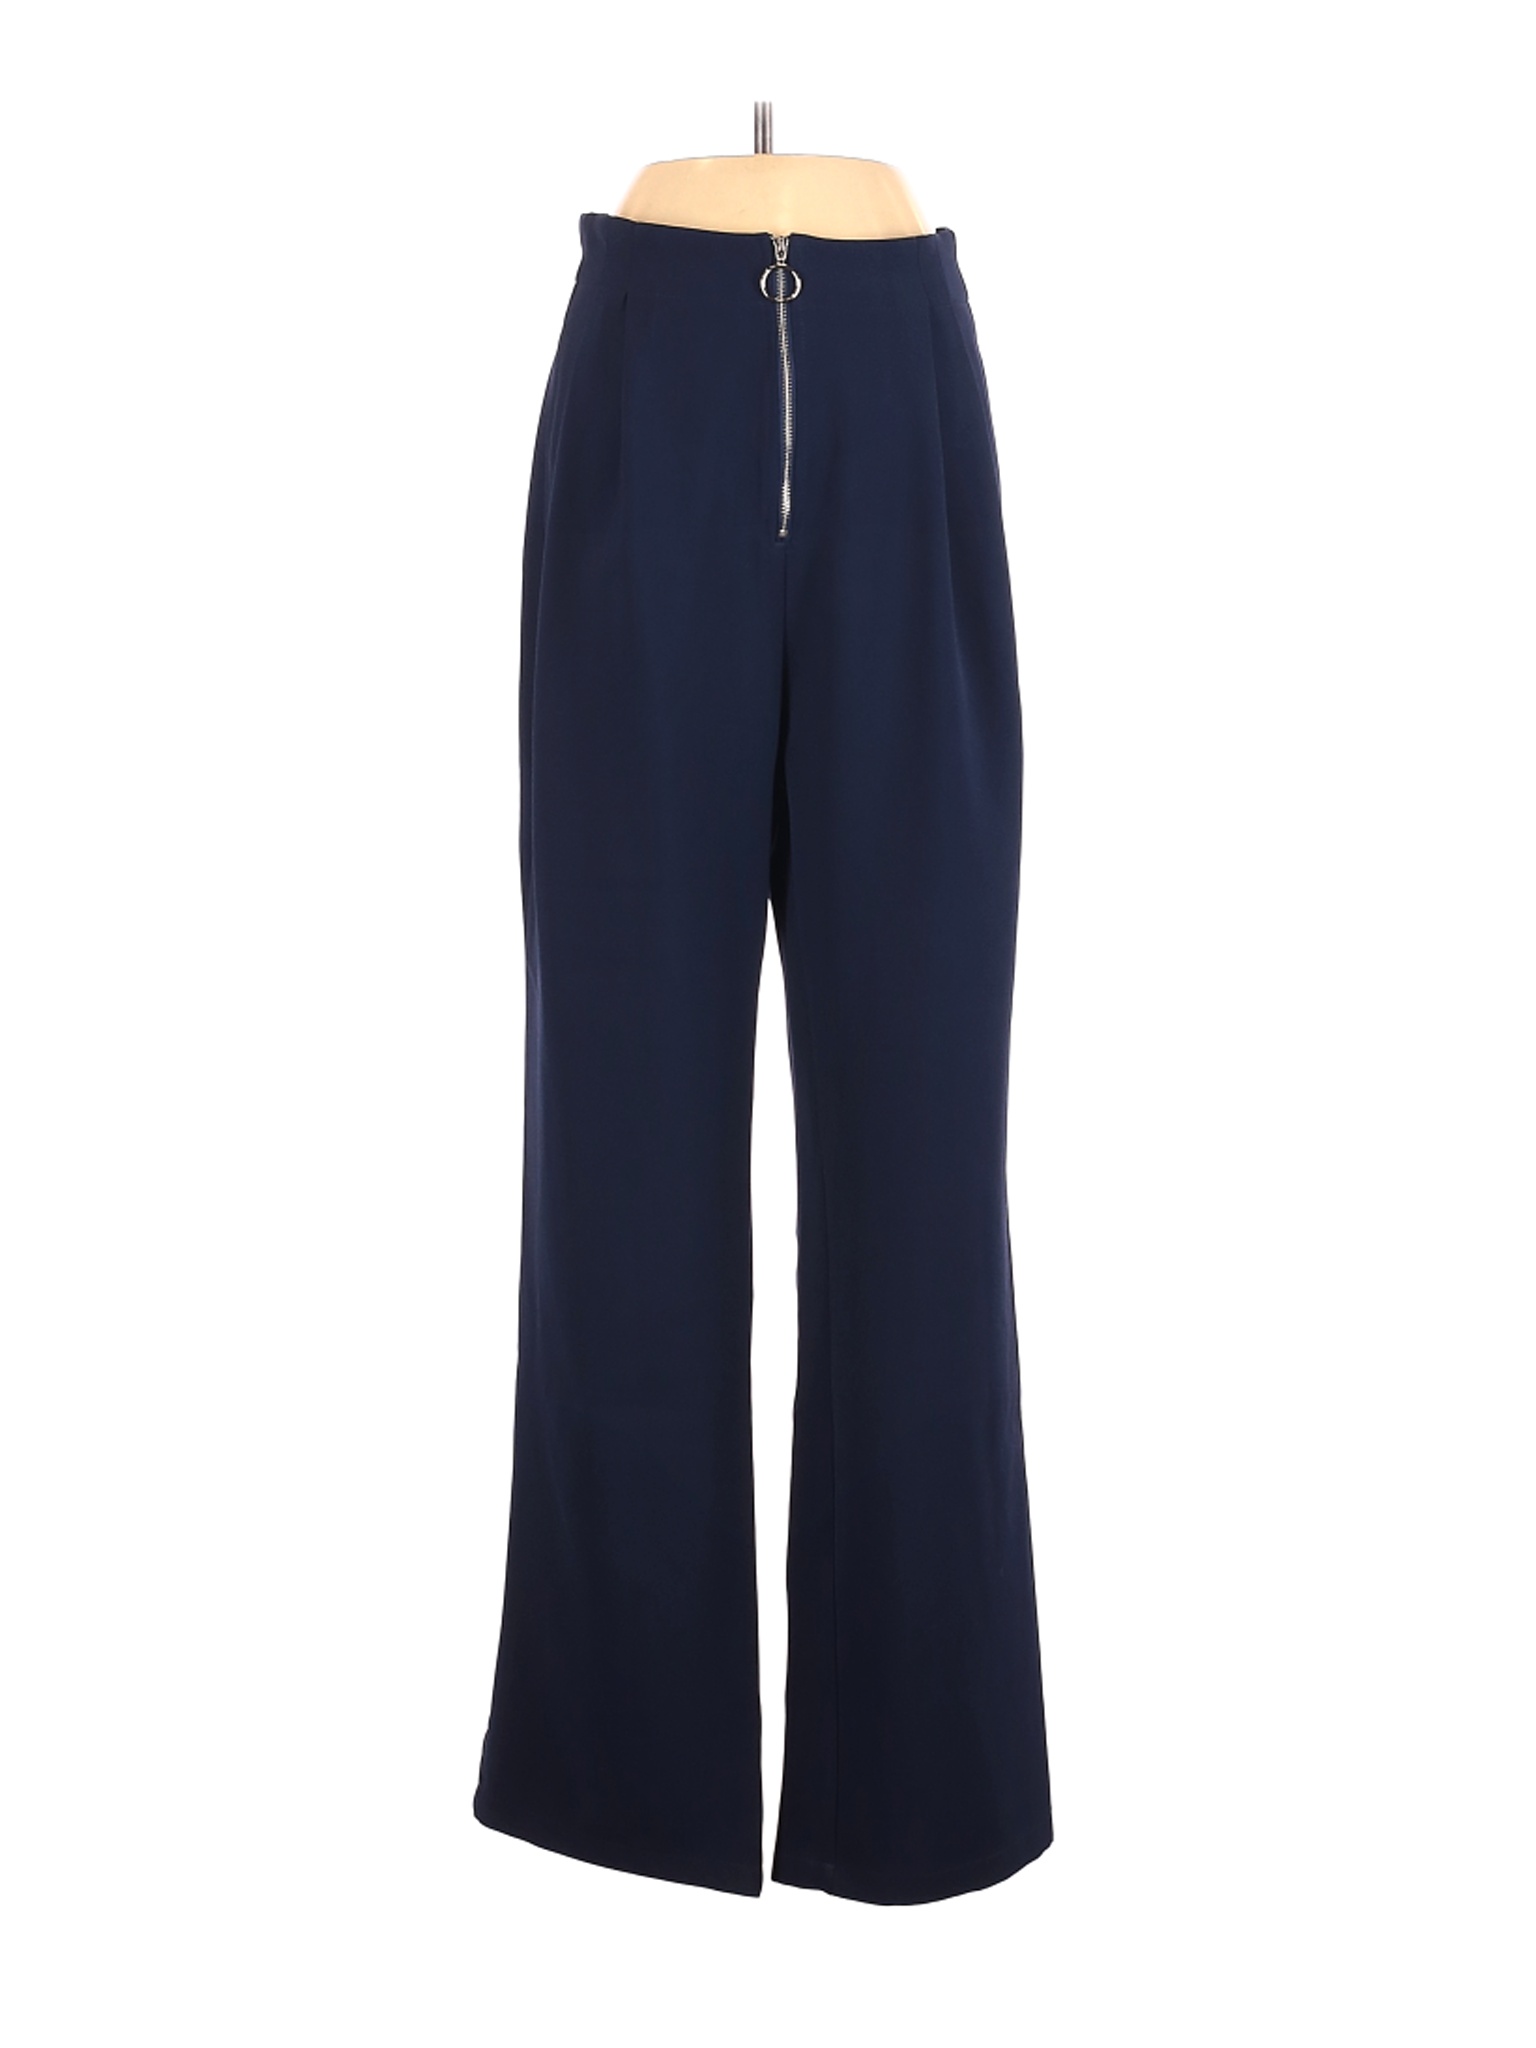 Shein Women Blue Casual Pants XS | eBay